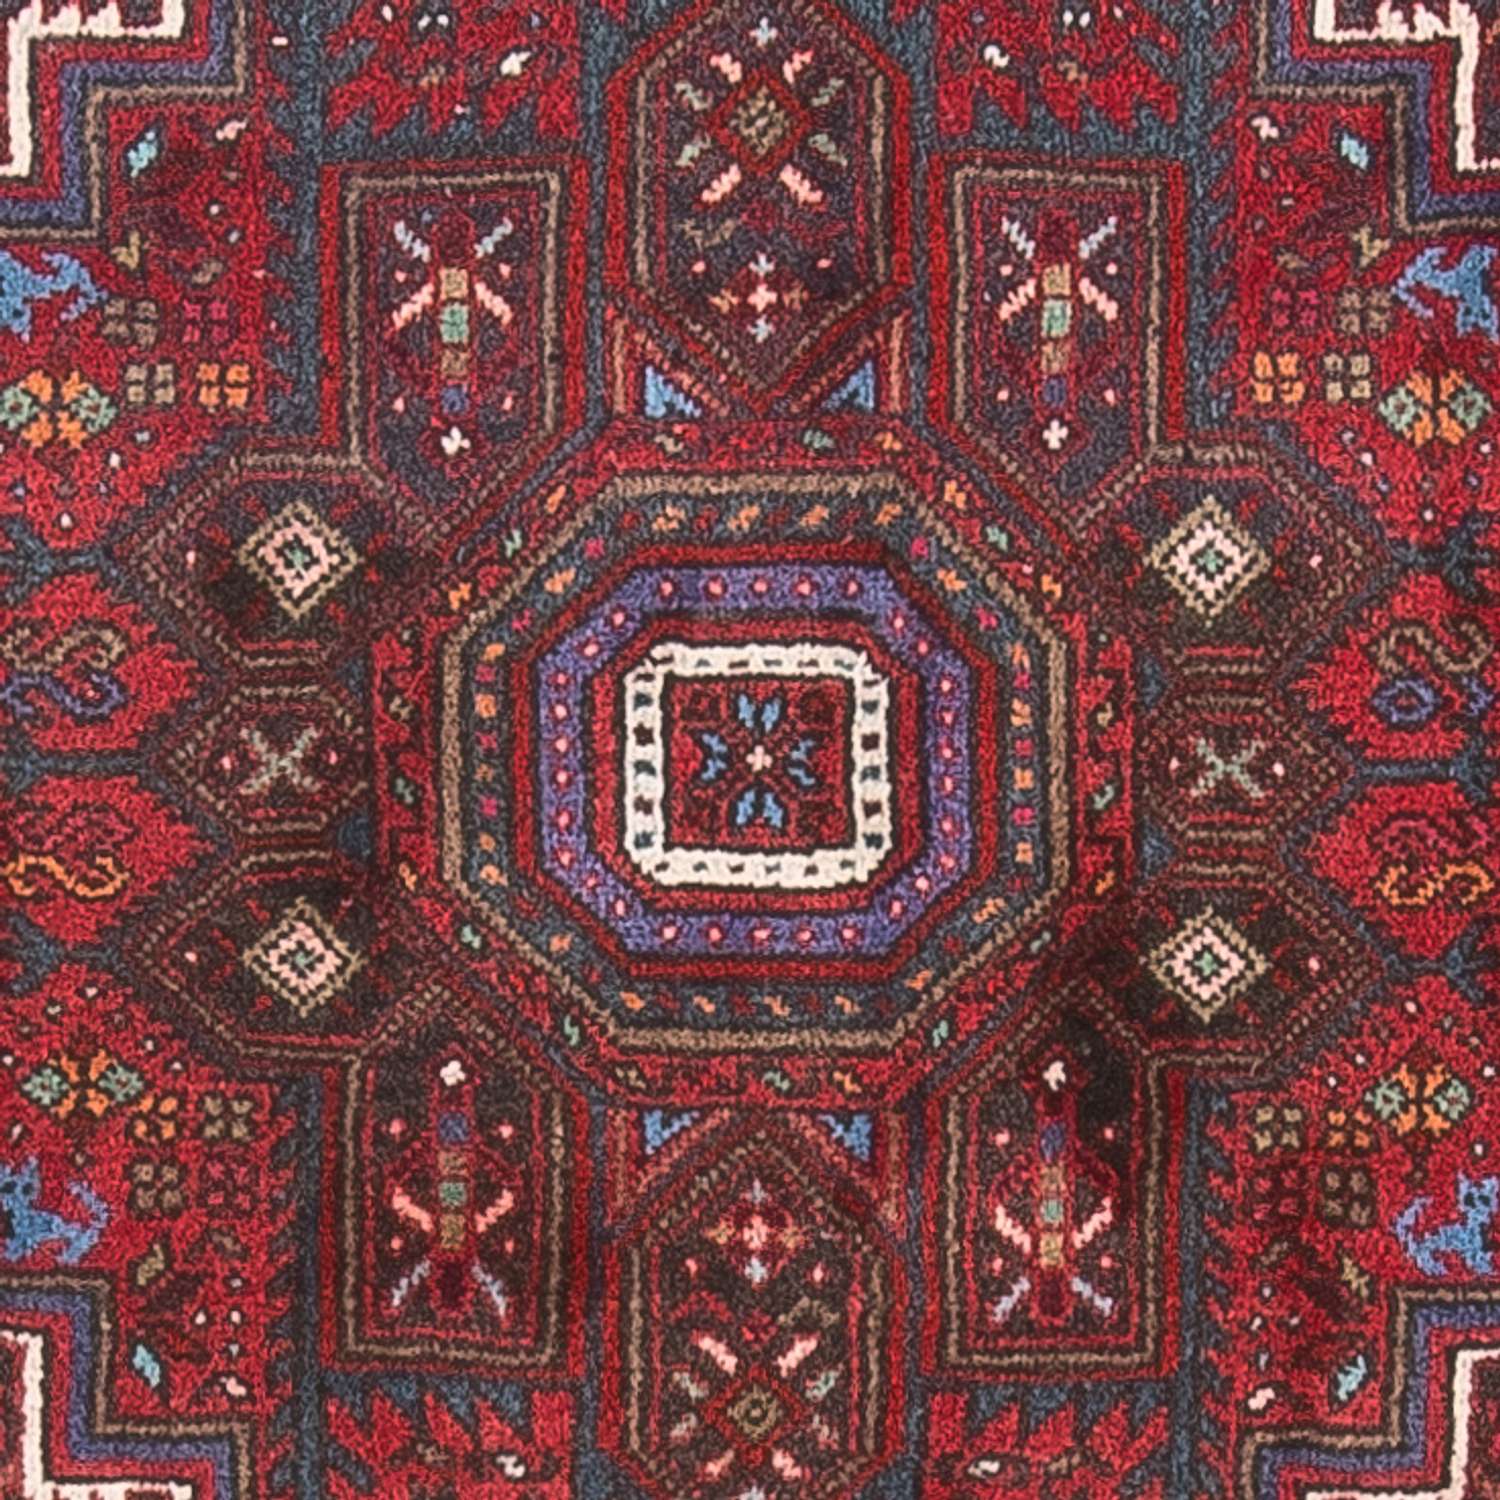 Tapete Persa - Nomadic - 130 x 90 cm - vermelho claro